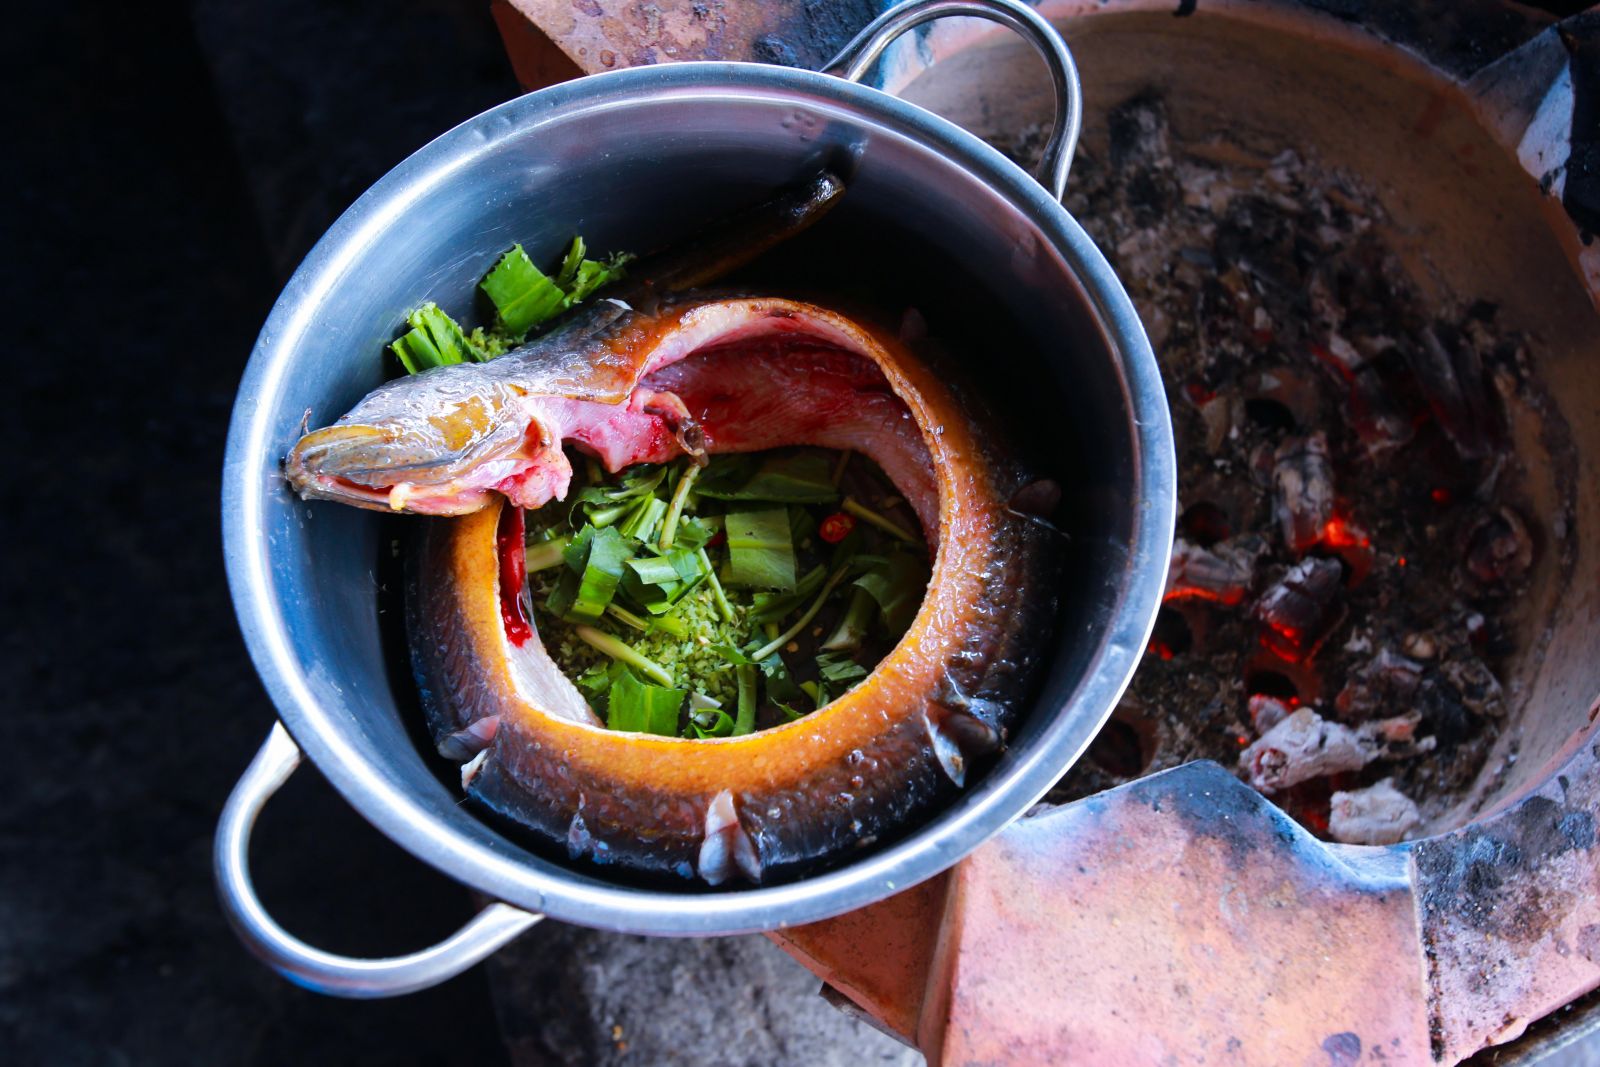 cùng những chú lươn nặng tới cả kg, to như cổ tay, da trơn nhẵn bóng được nướng mọi là những sản vật tự nhiên trong ẩm thực xứ rừng U Minh.